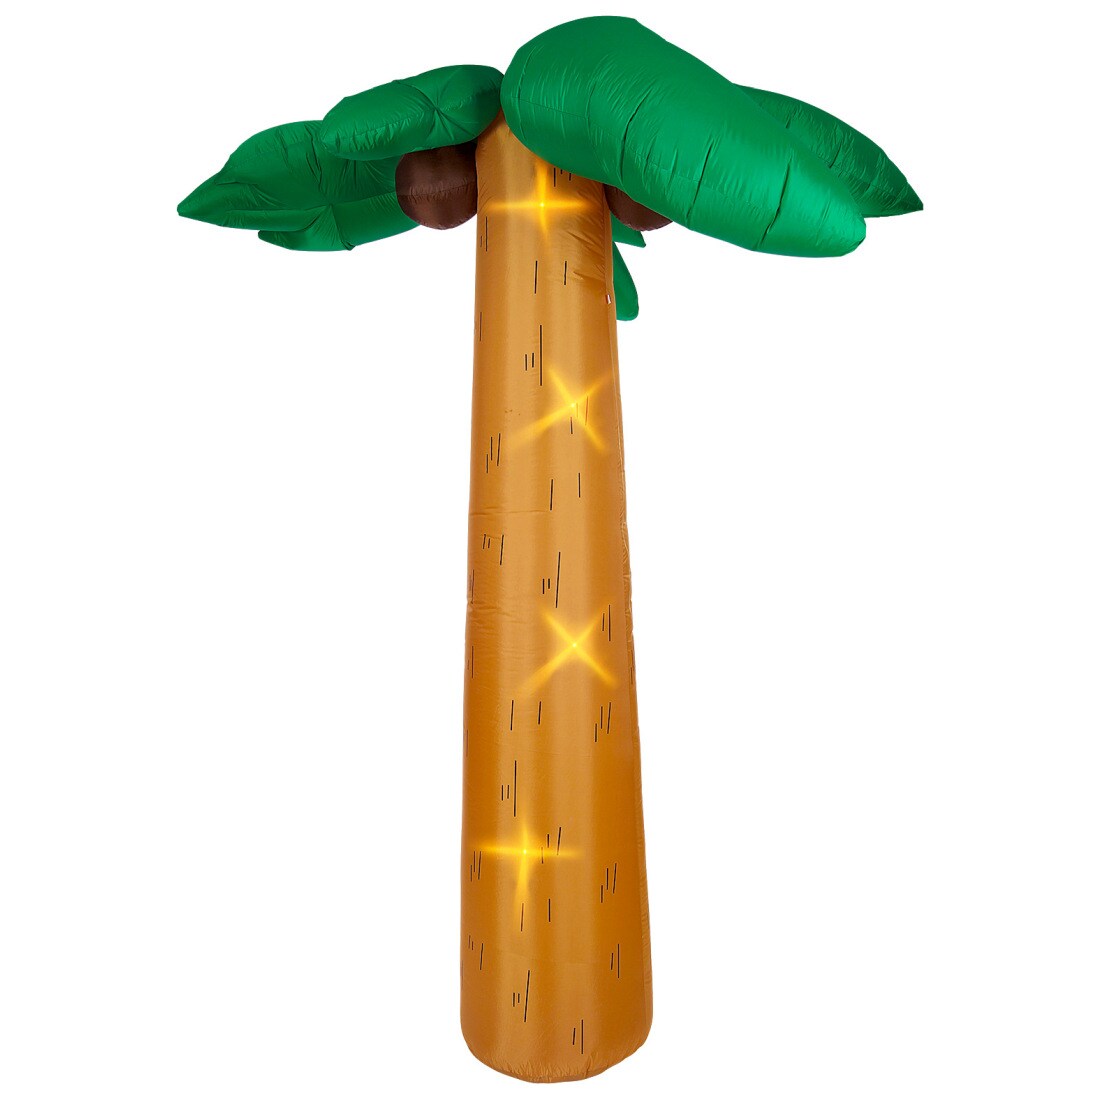 Aufblasbare Palme mit Licht extra groß 270 cm hoch für innen und auße